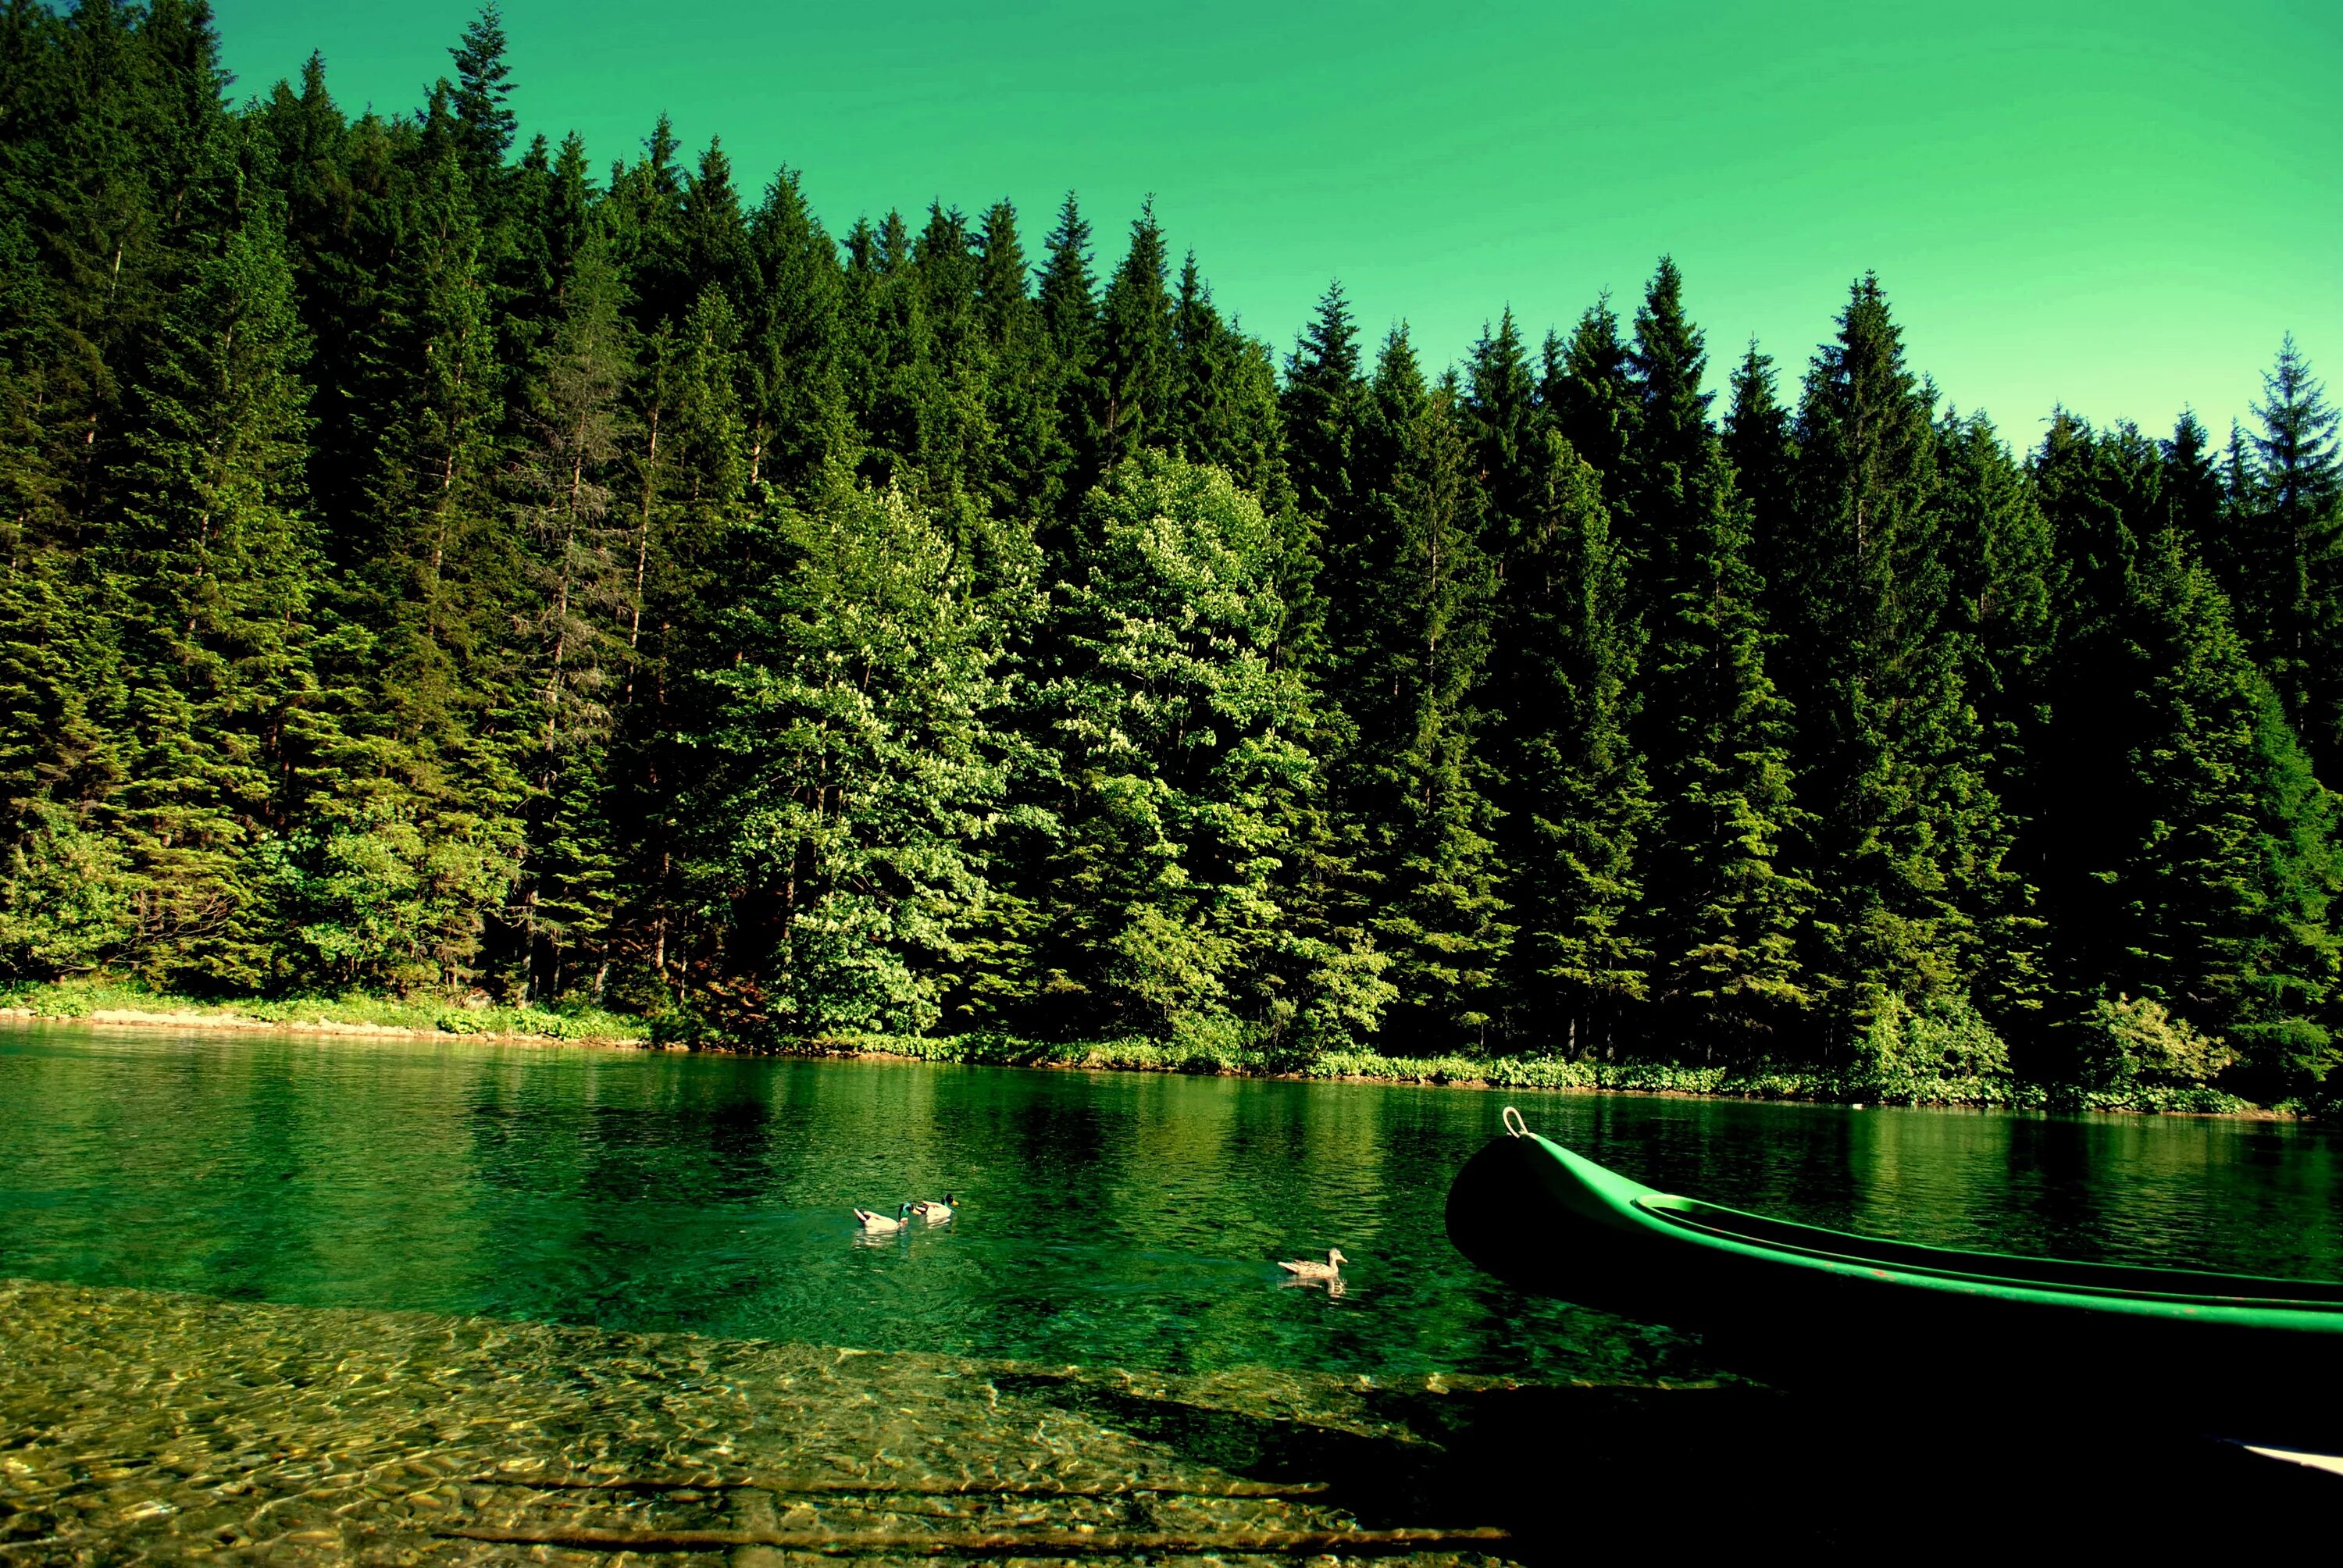 Картинка на обои высокого качества. Озеро Рица. Озеро Грин Лейк Гавайи. Телецкое озеро. Природа лес.